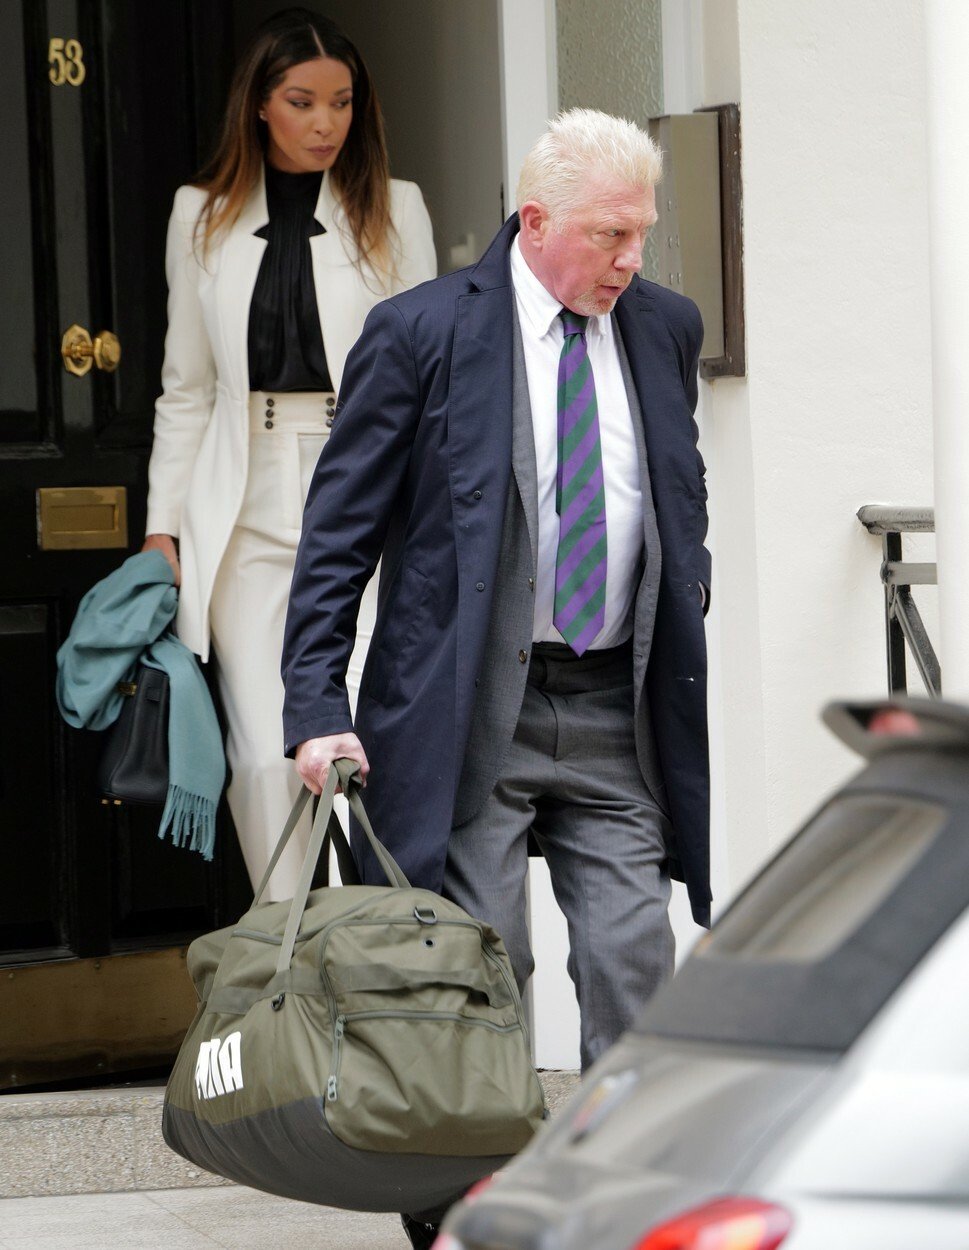 Becker při odchodu ze svého domu nesl sportovní tašku s věcmi pro případný pobyt ve vězení